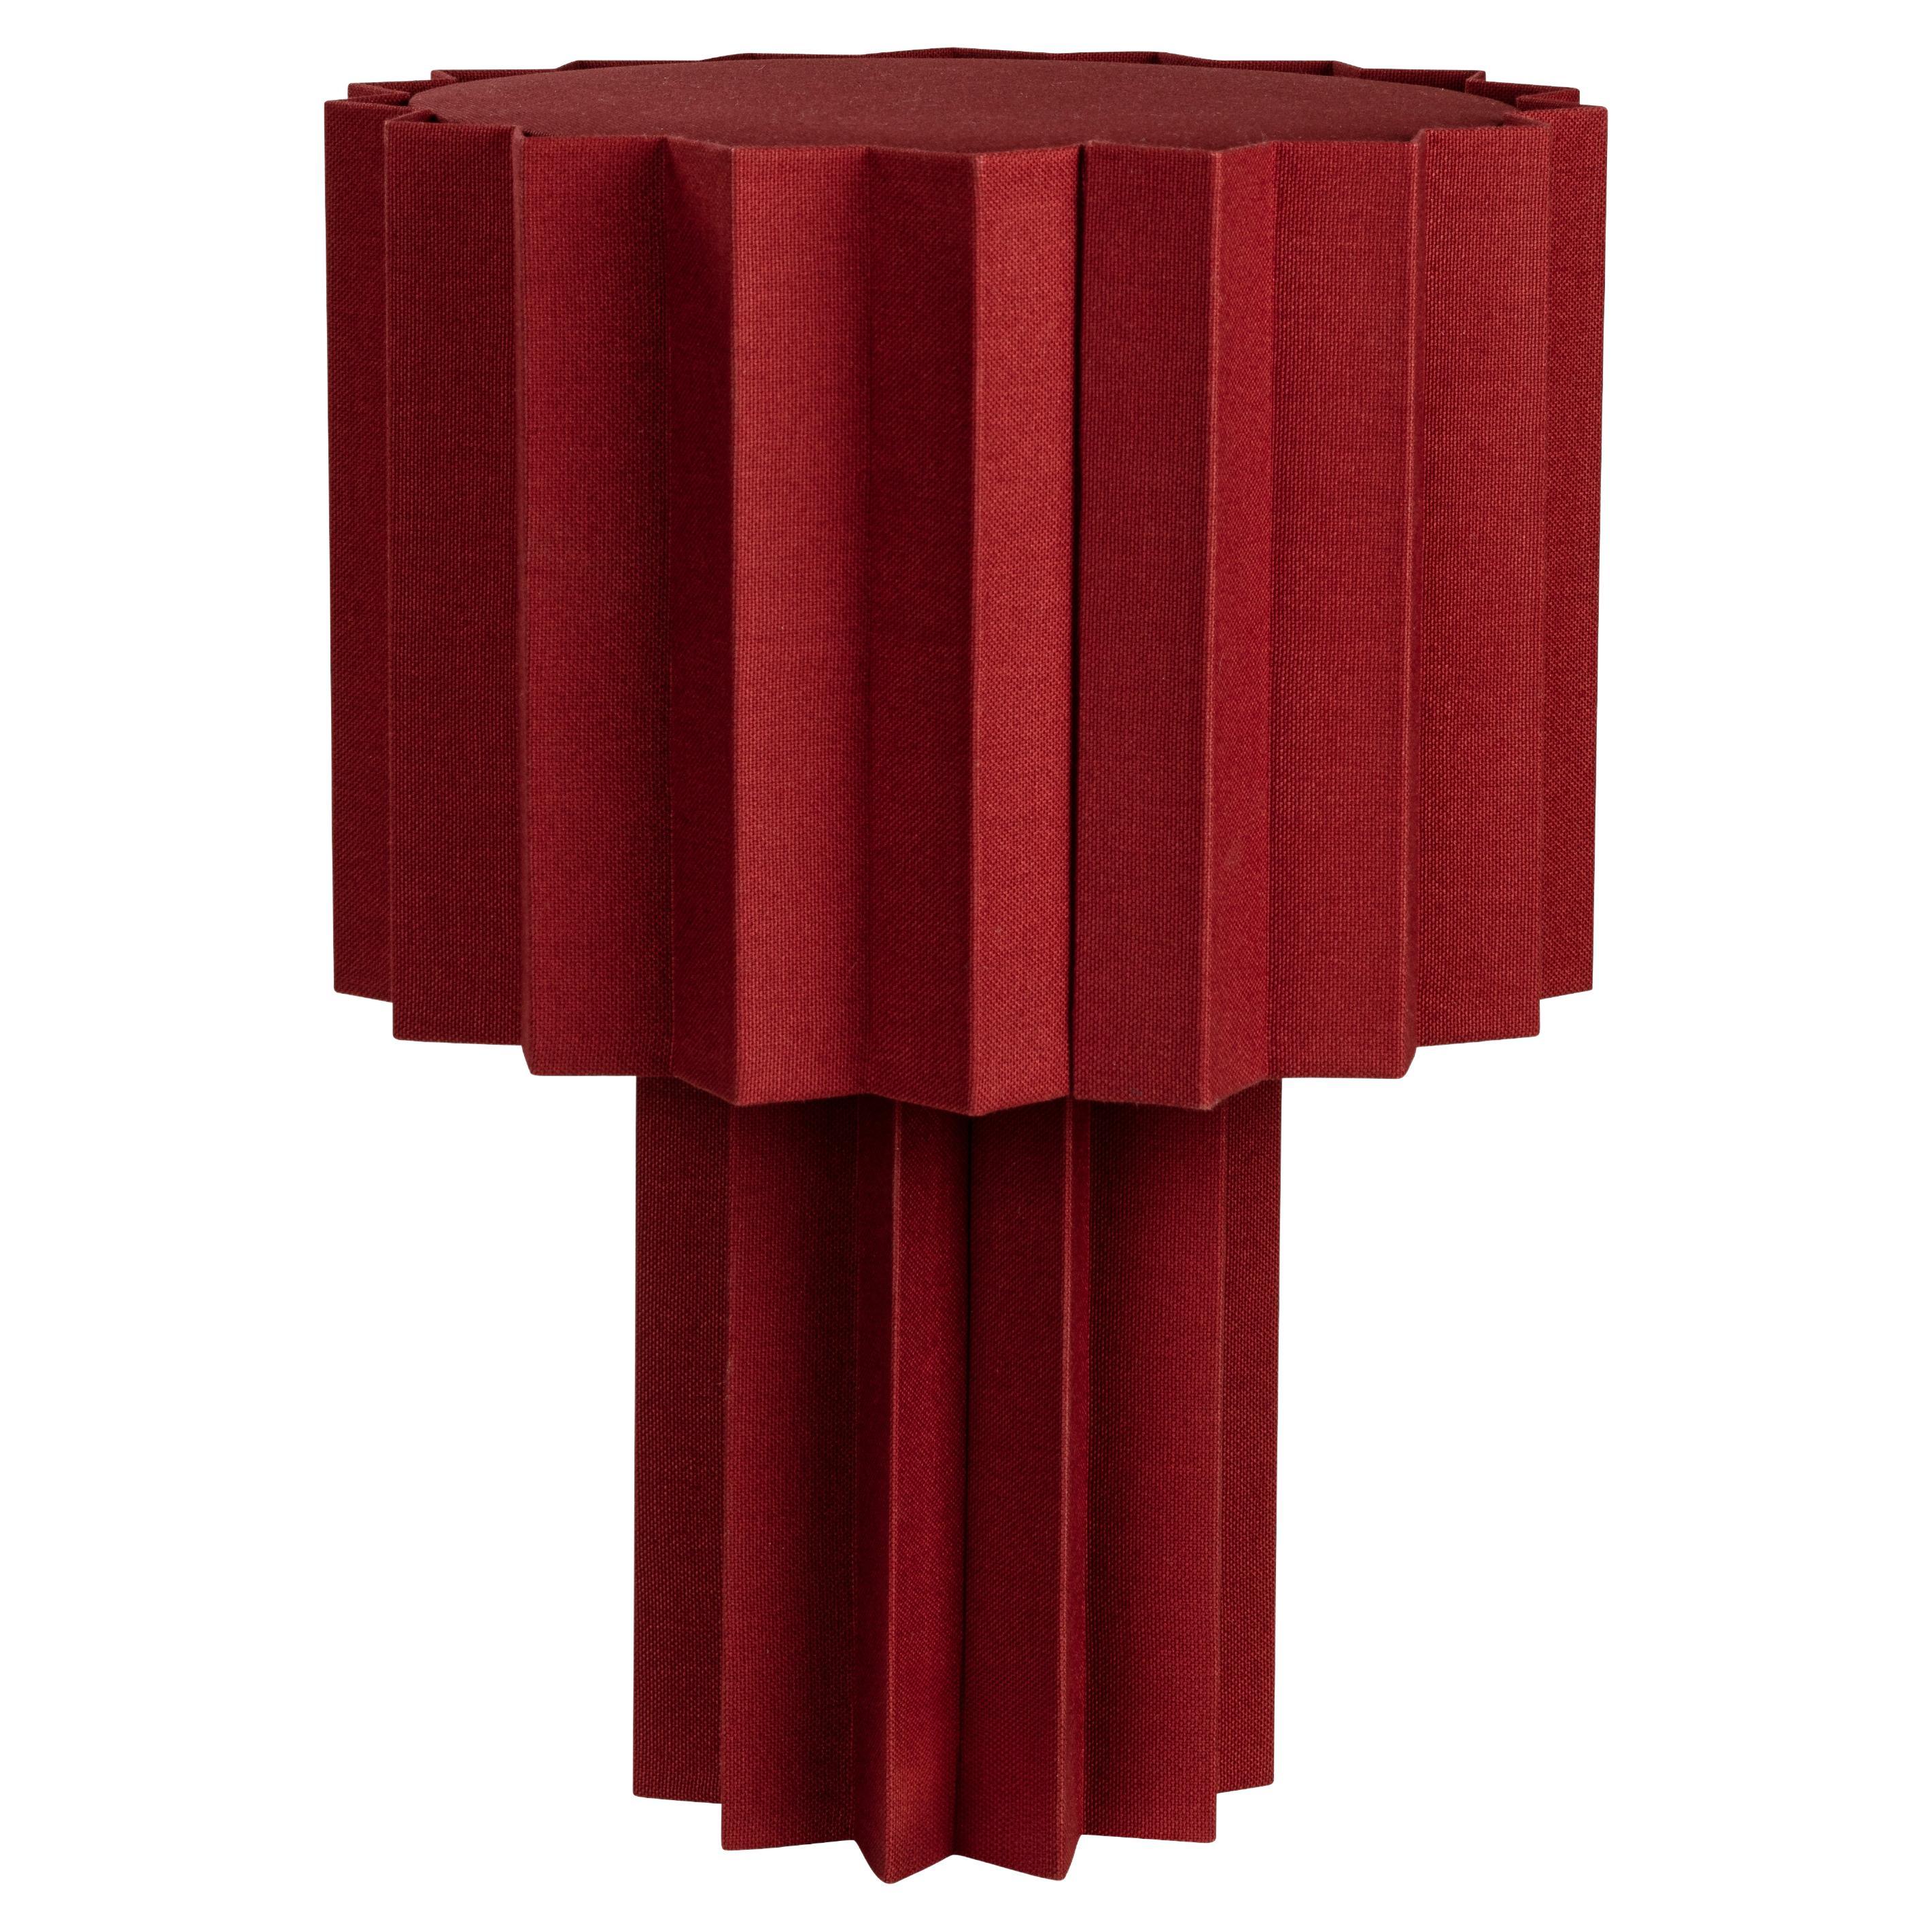 'Plissé Burgundy Edition' Pleated Textile Table Lamp by Folkform for Örsjö